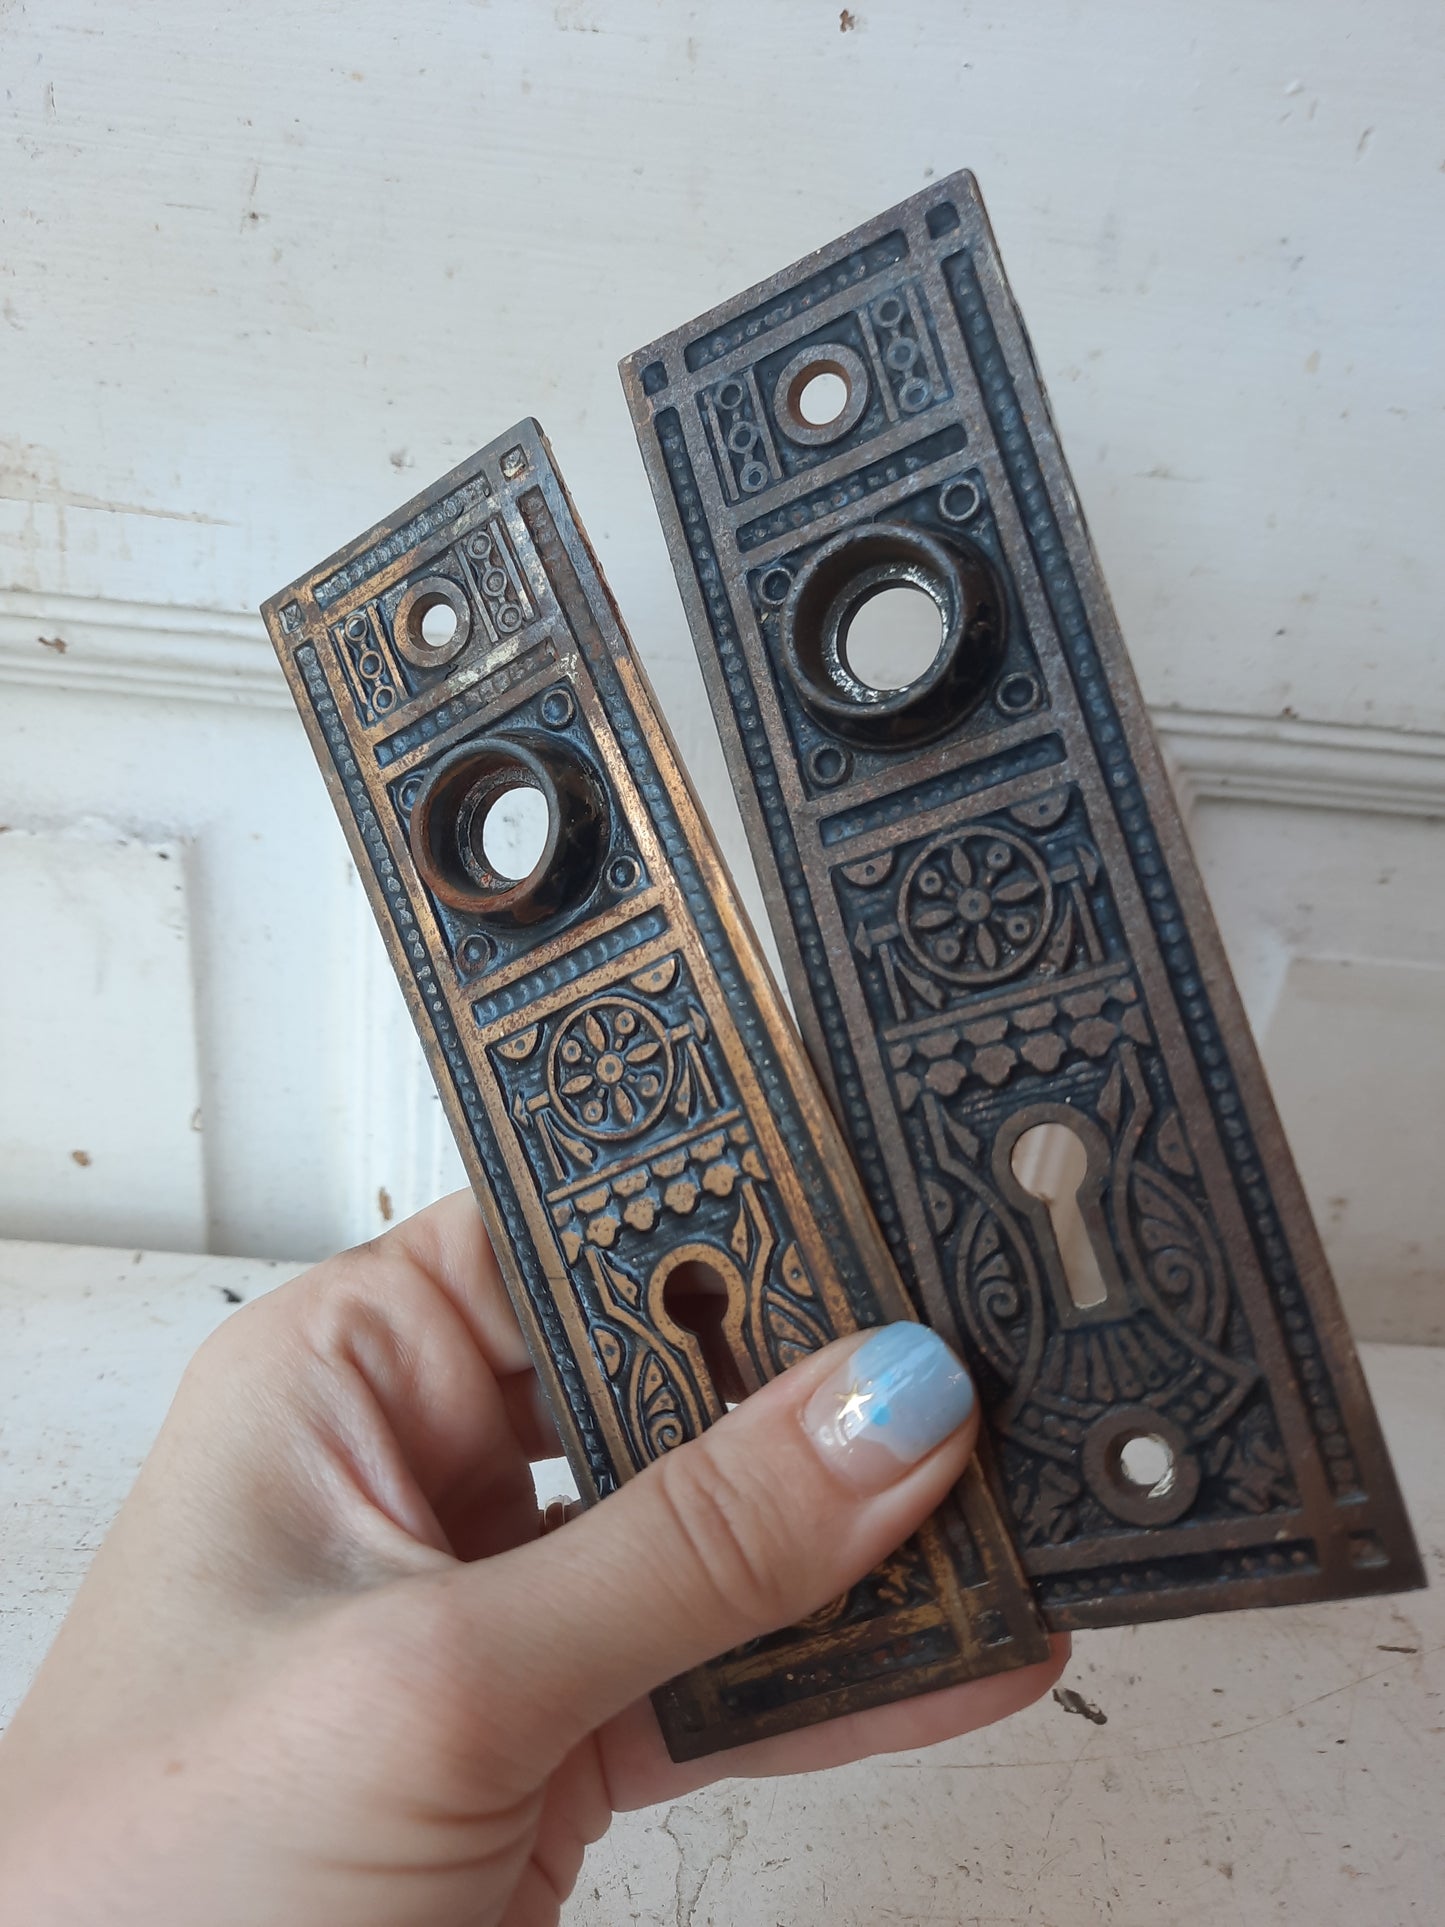 Pair of Brass Plated Iron Door Backplates, Antique Door Knob Eastlake Escutcheons